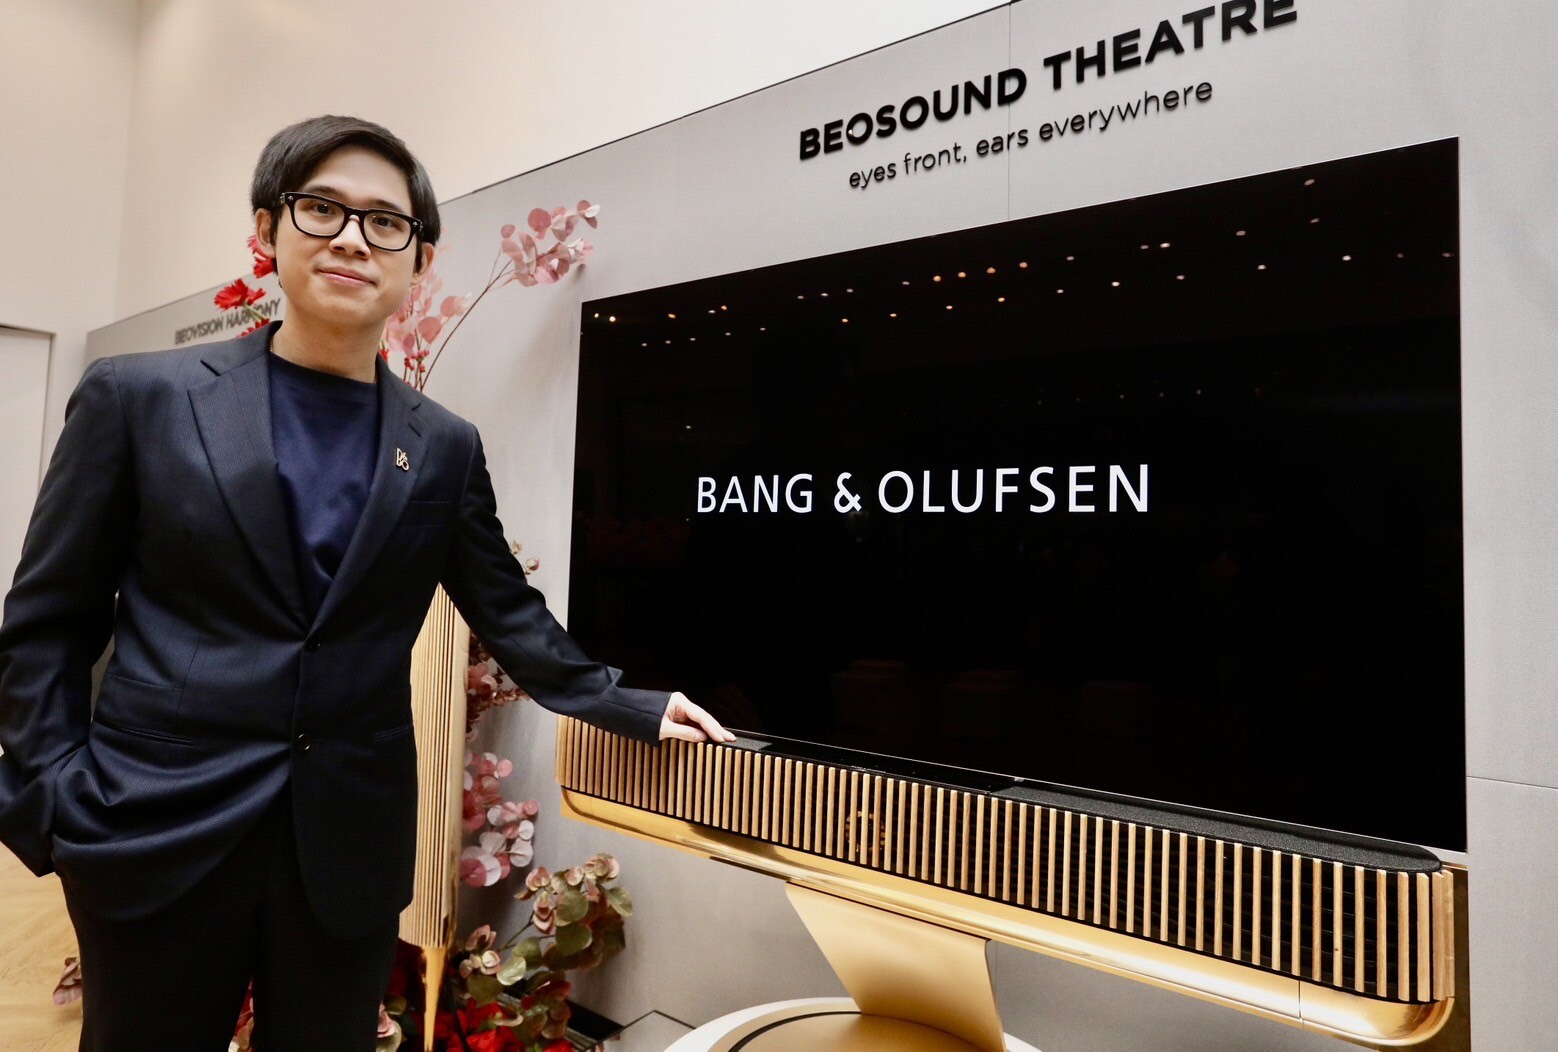 Bang &amp; Olufsen รุกตลาดเต็มสูบรับช่วงเวลาแห่งความสุขปลายปี เปิดตัว "Beosound Theatre A NEW VISION FOR SOUND" สุดยอดซาวด์บาร์ล่าสุด